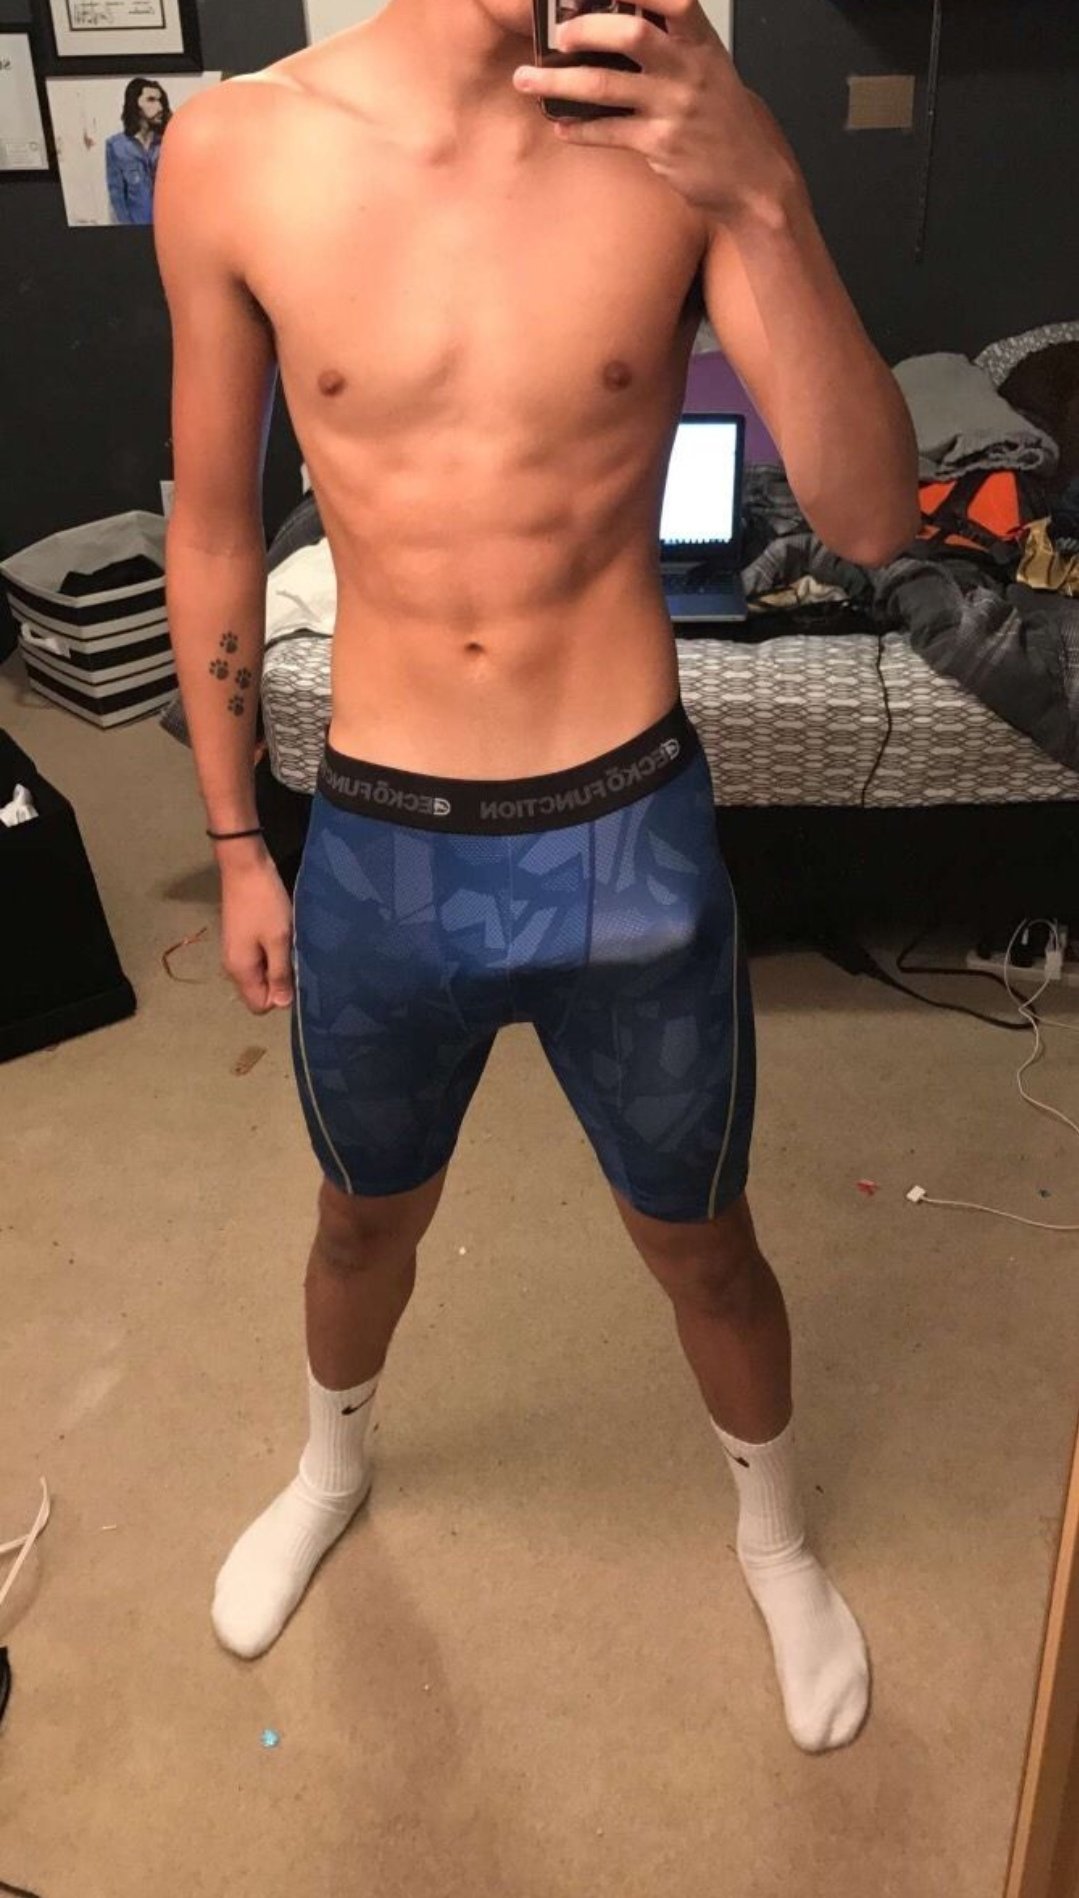 Huge boner bulging through boxers